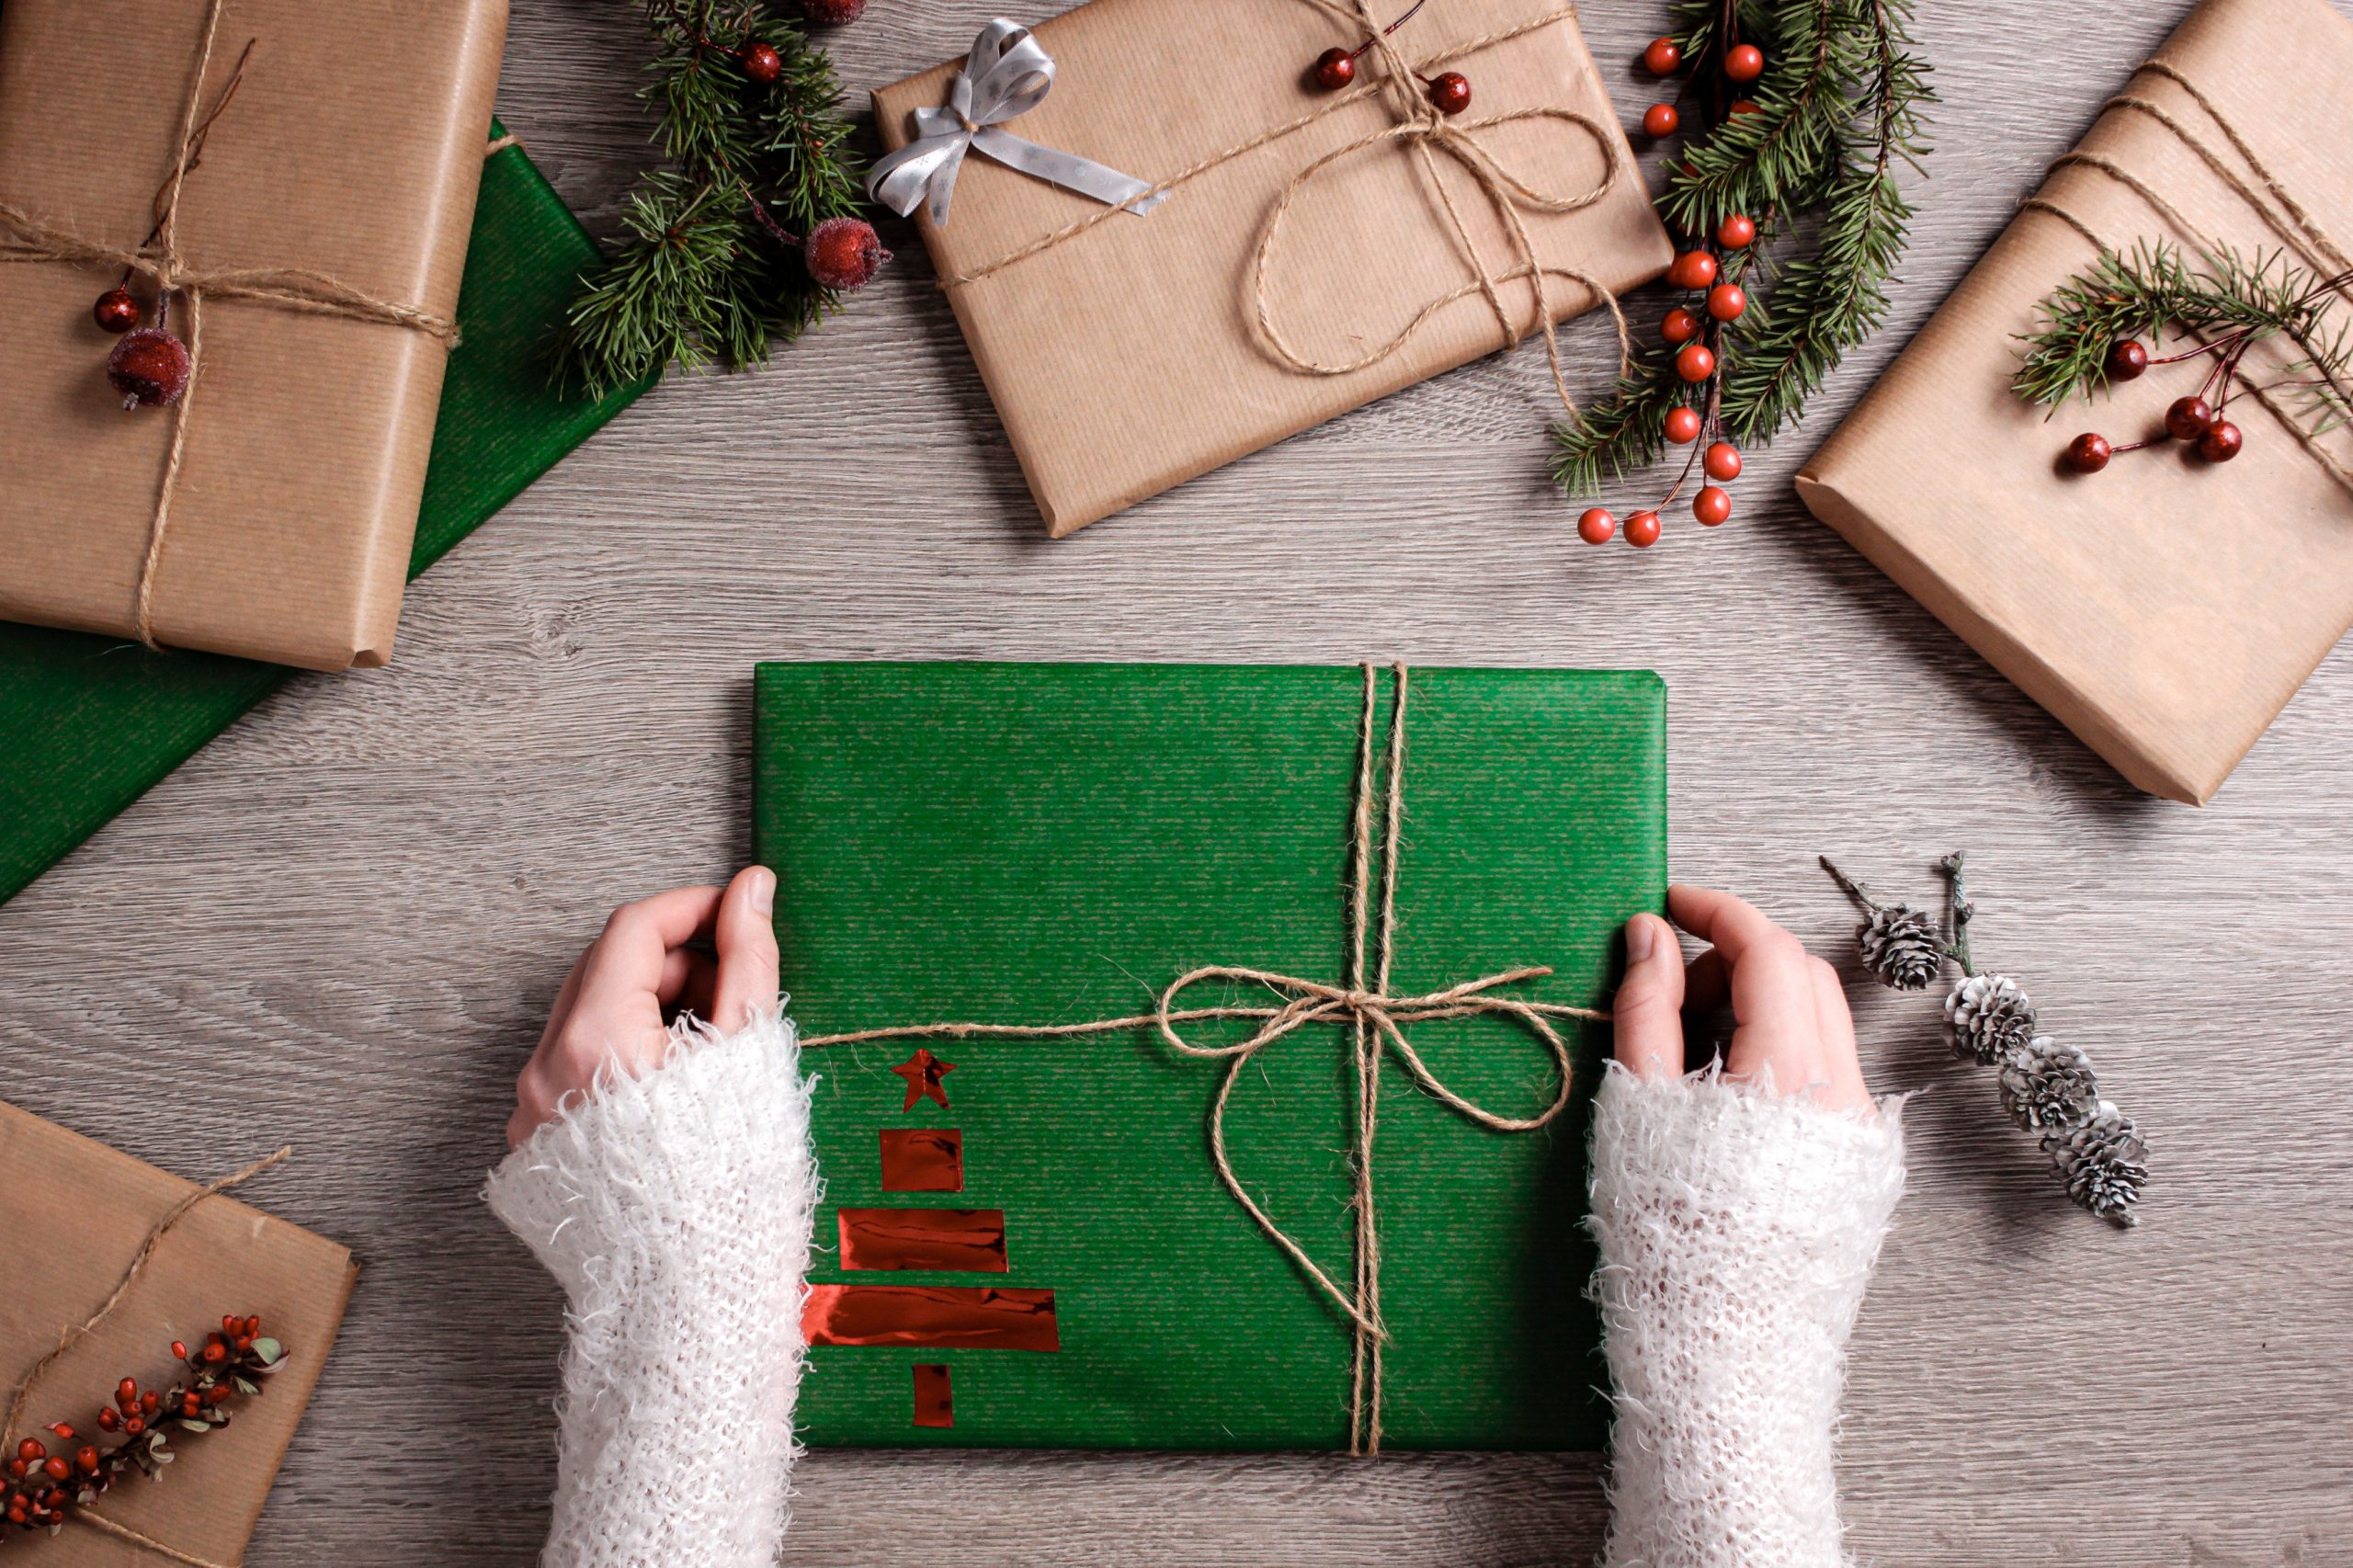 Deux mains en train d'emballer un cadeau avec du papier vert sur une table qui contient d'autres cadeaux emballés dans du papier brun.